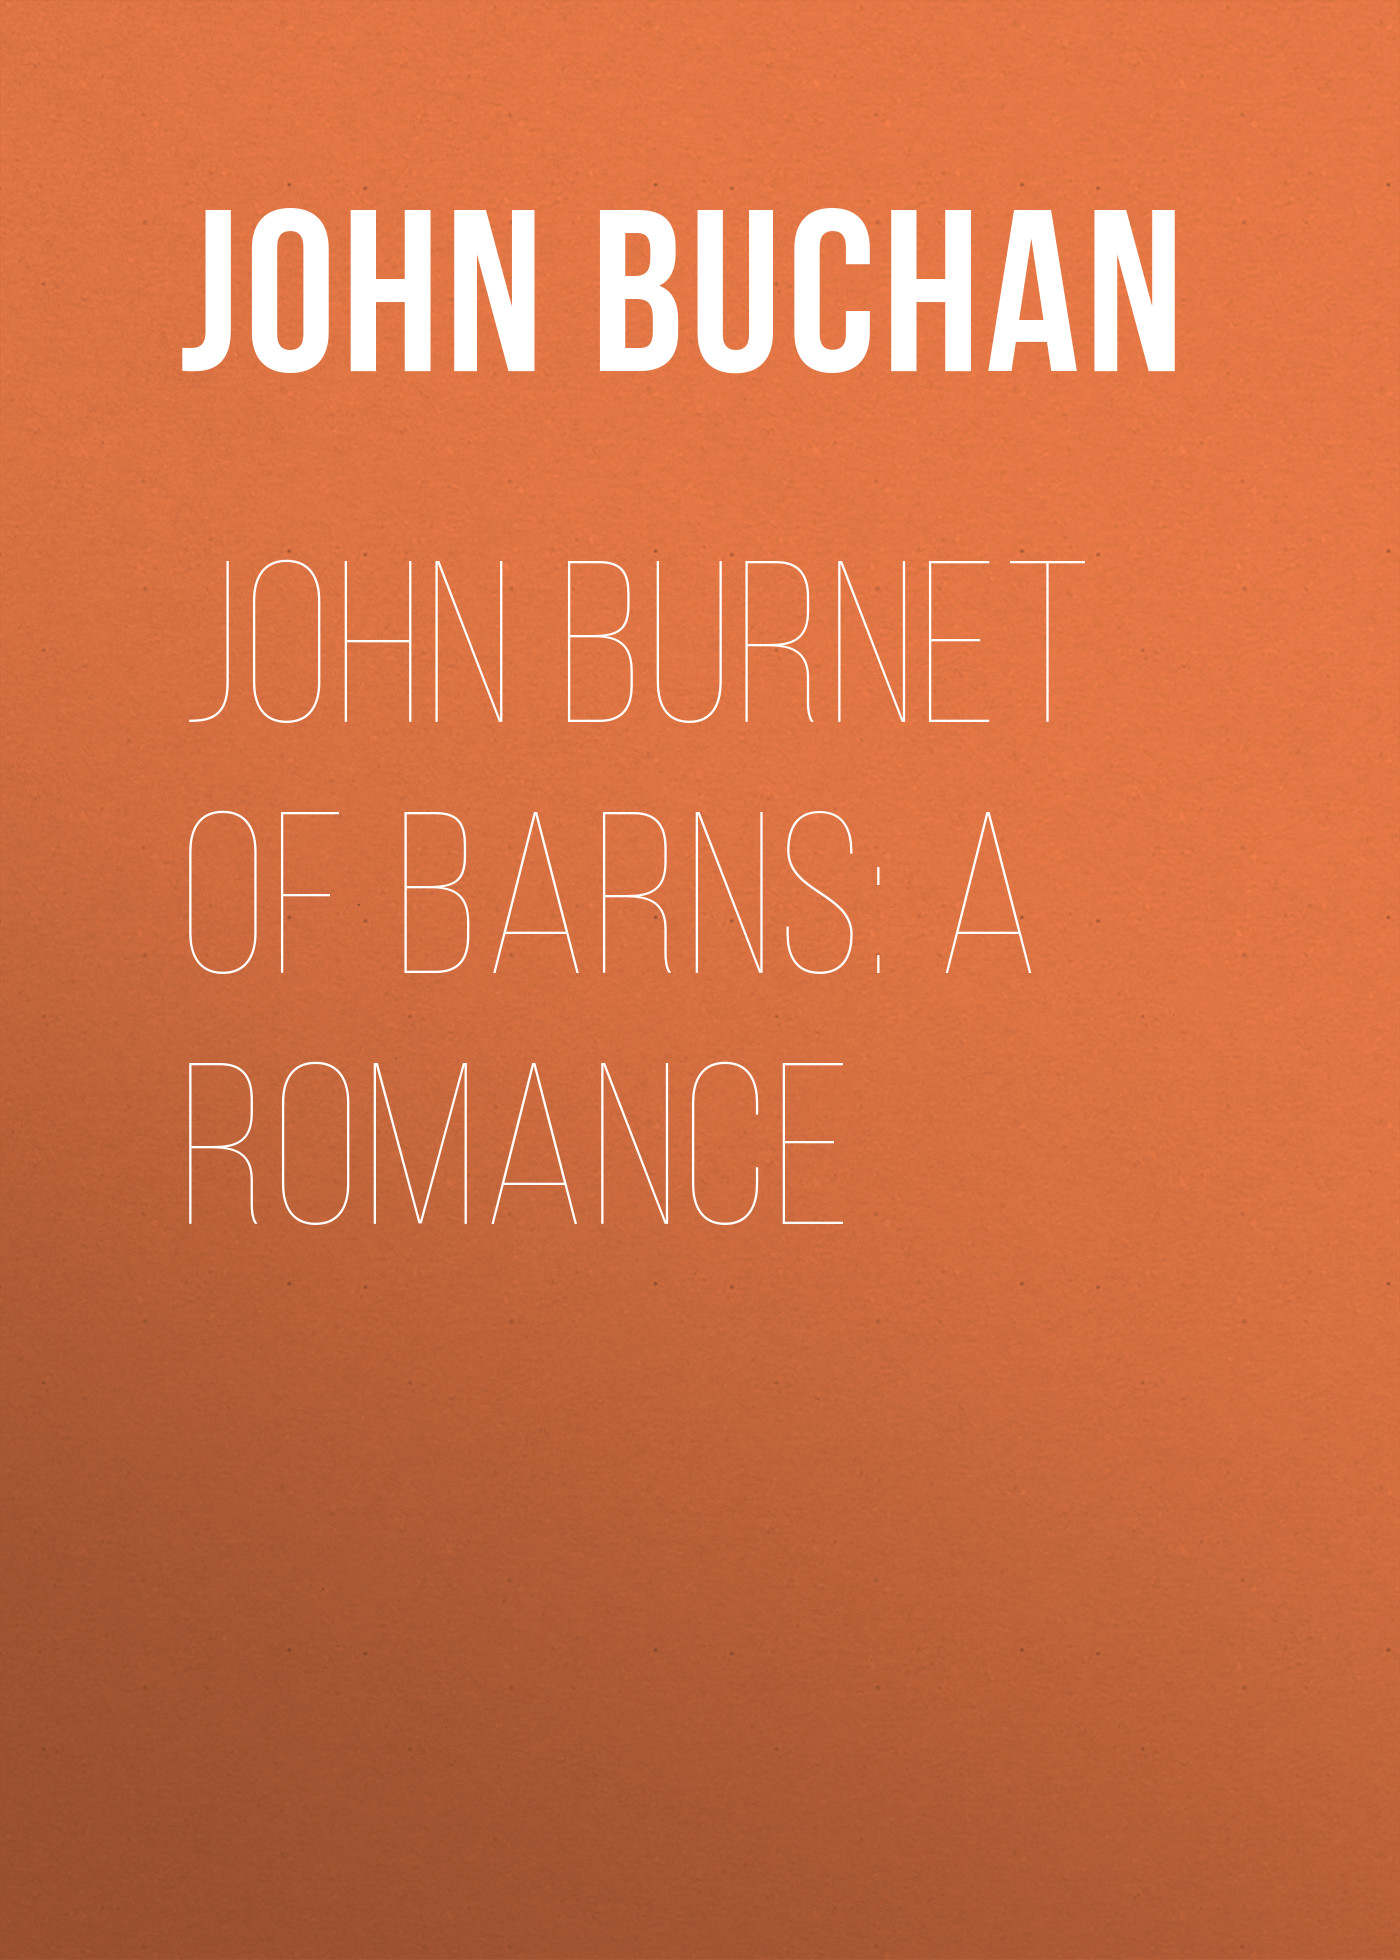 Книга John Burnet of Barns: A Romance из серии , созданная John Buchan, может относится к жанру Зарубежная старинная литература, Зарубежная классика. Стоимость электронной книги John Burnet of Barns: A Romance с идентификатором 24165908 составляет 0.90 руб.